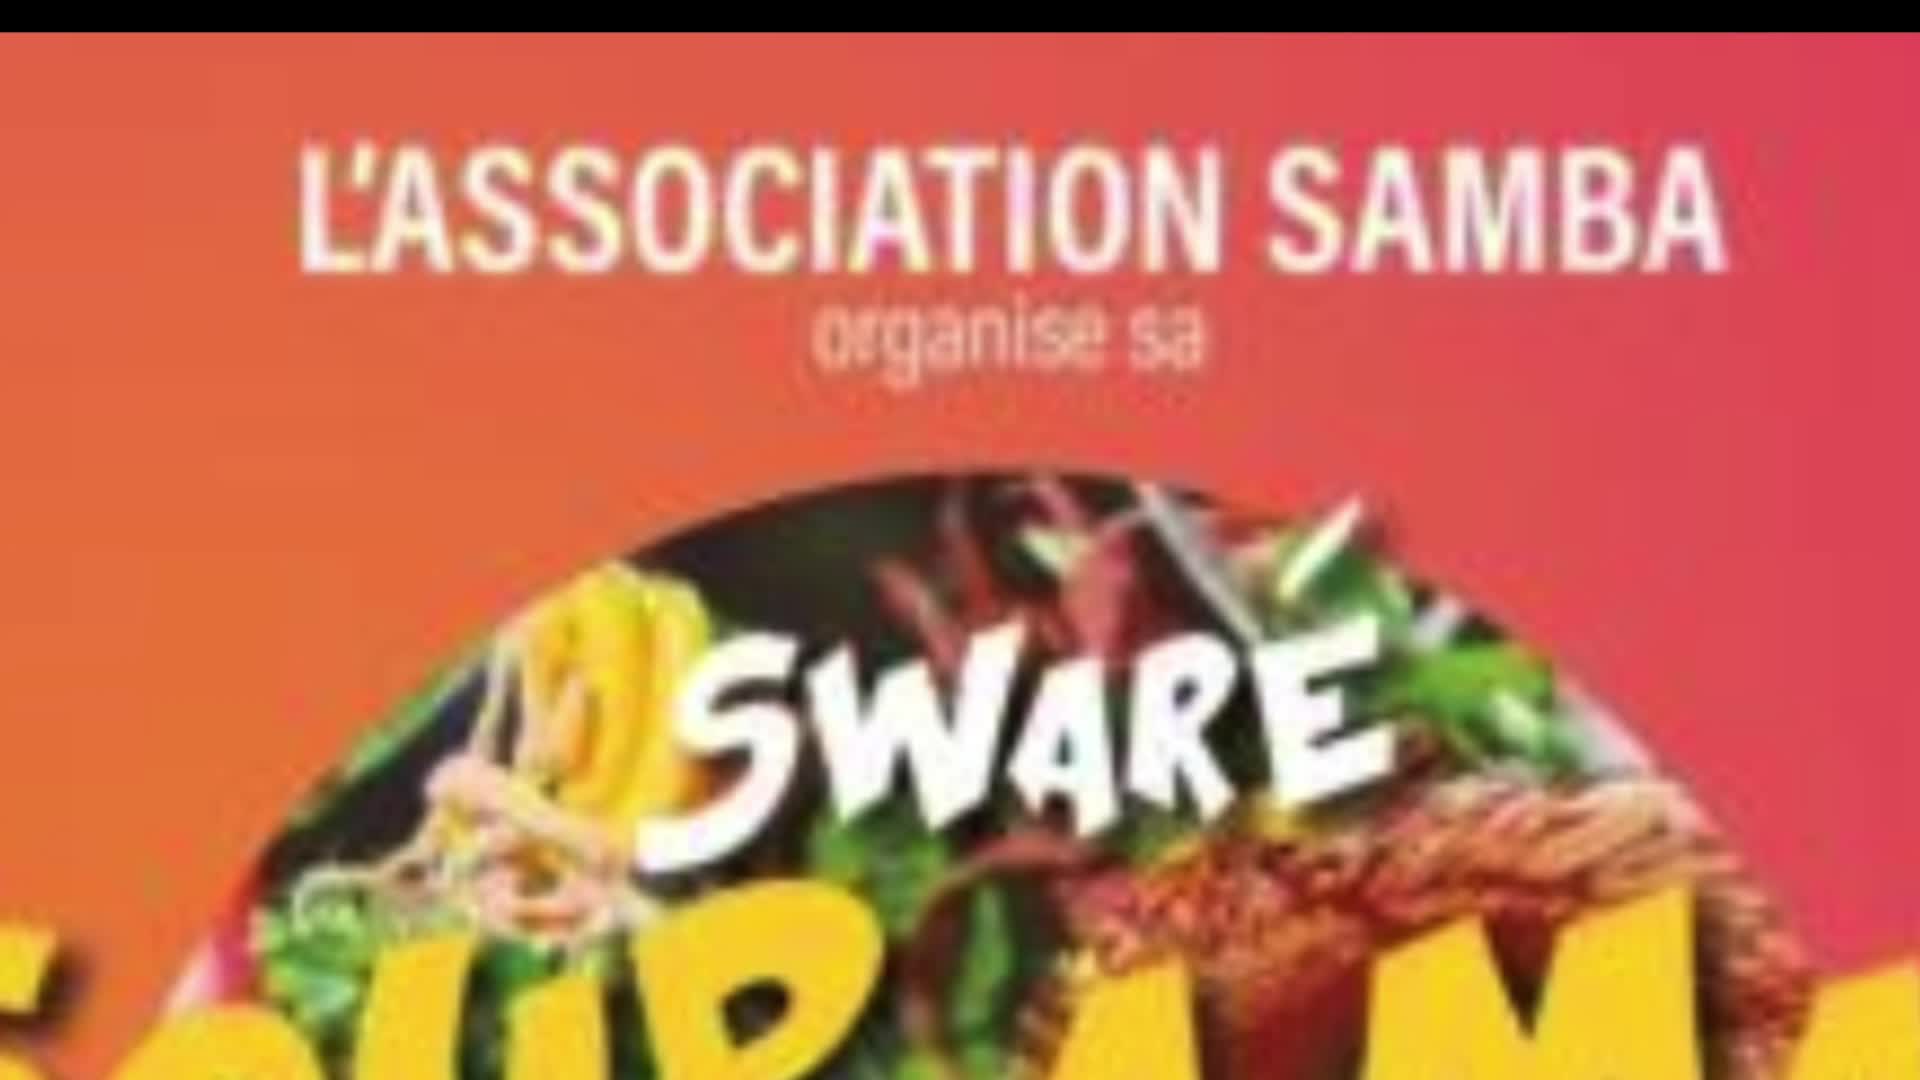 Soirée de partage avec l'association Samba